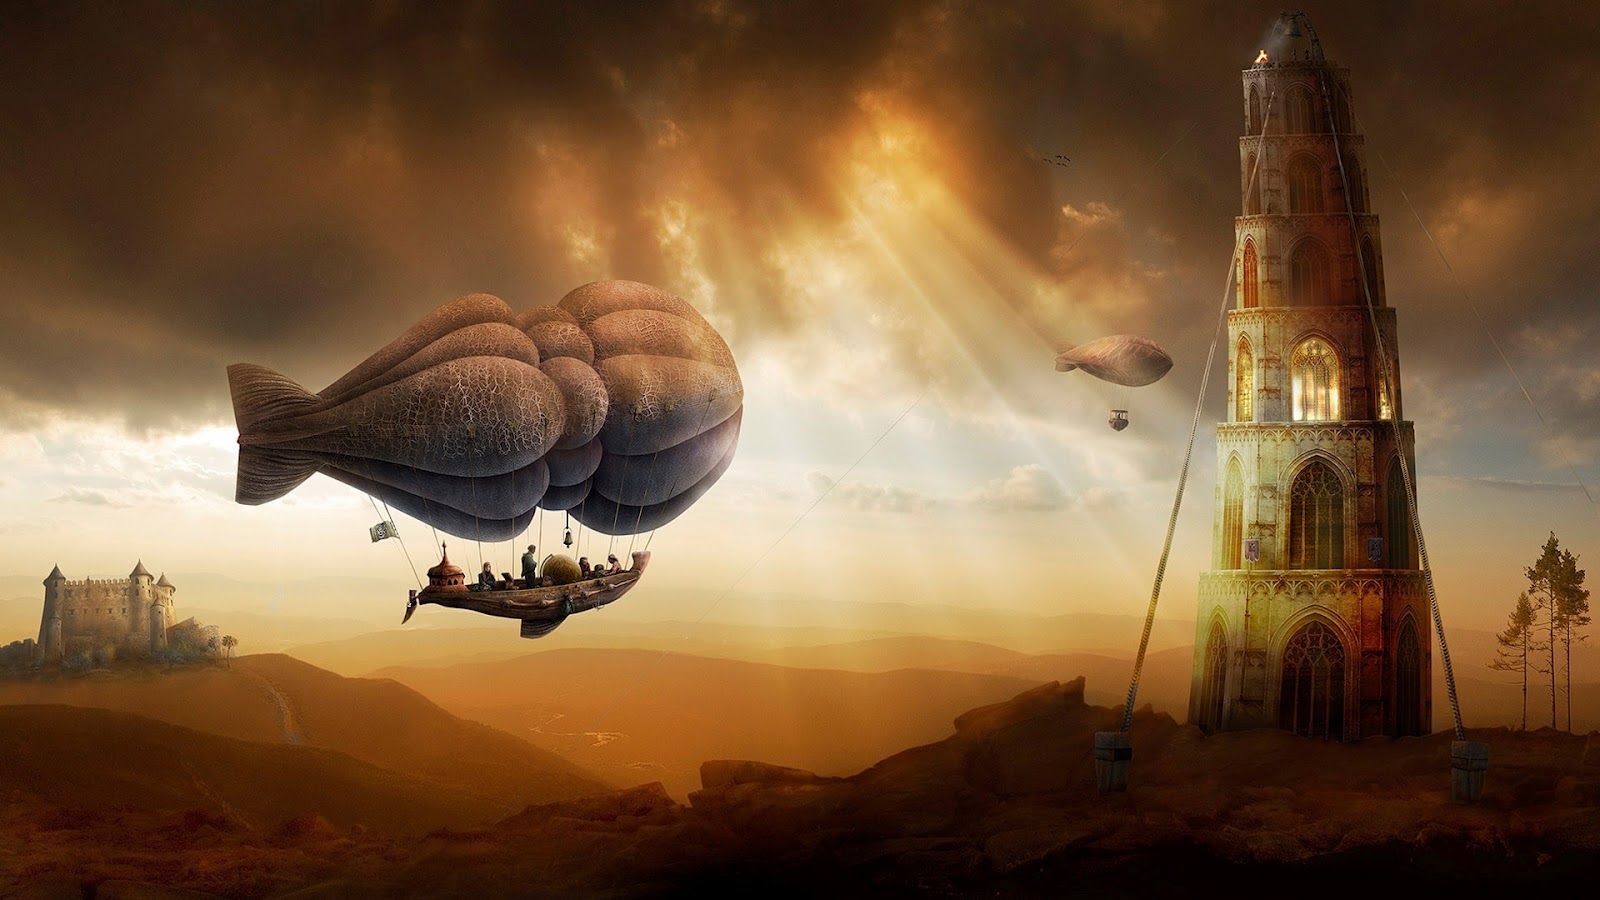 Fantasy Air Balloons - HD Wallpaper 